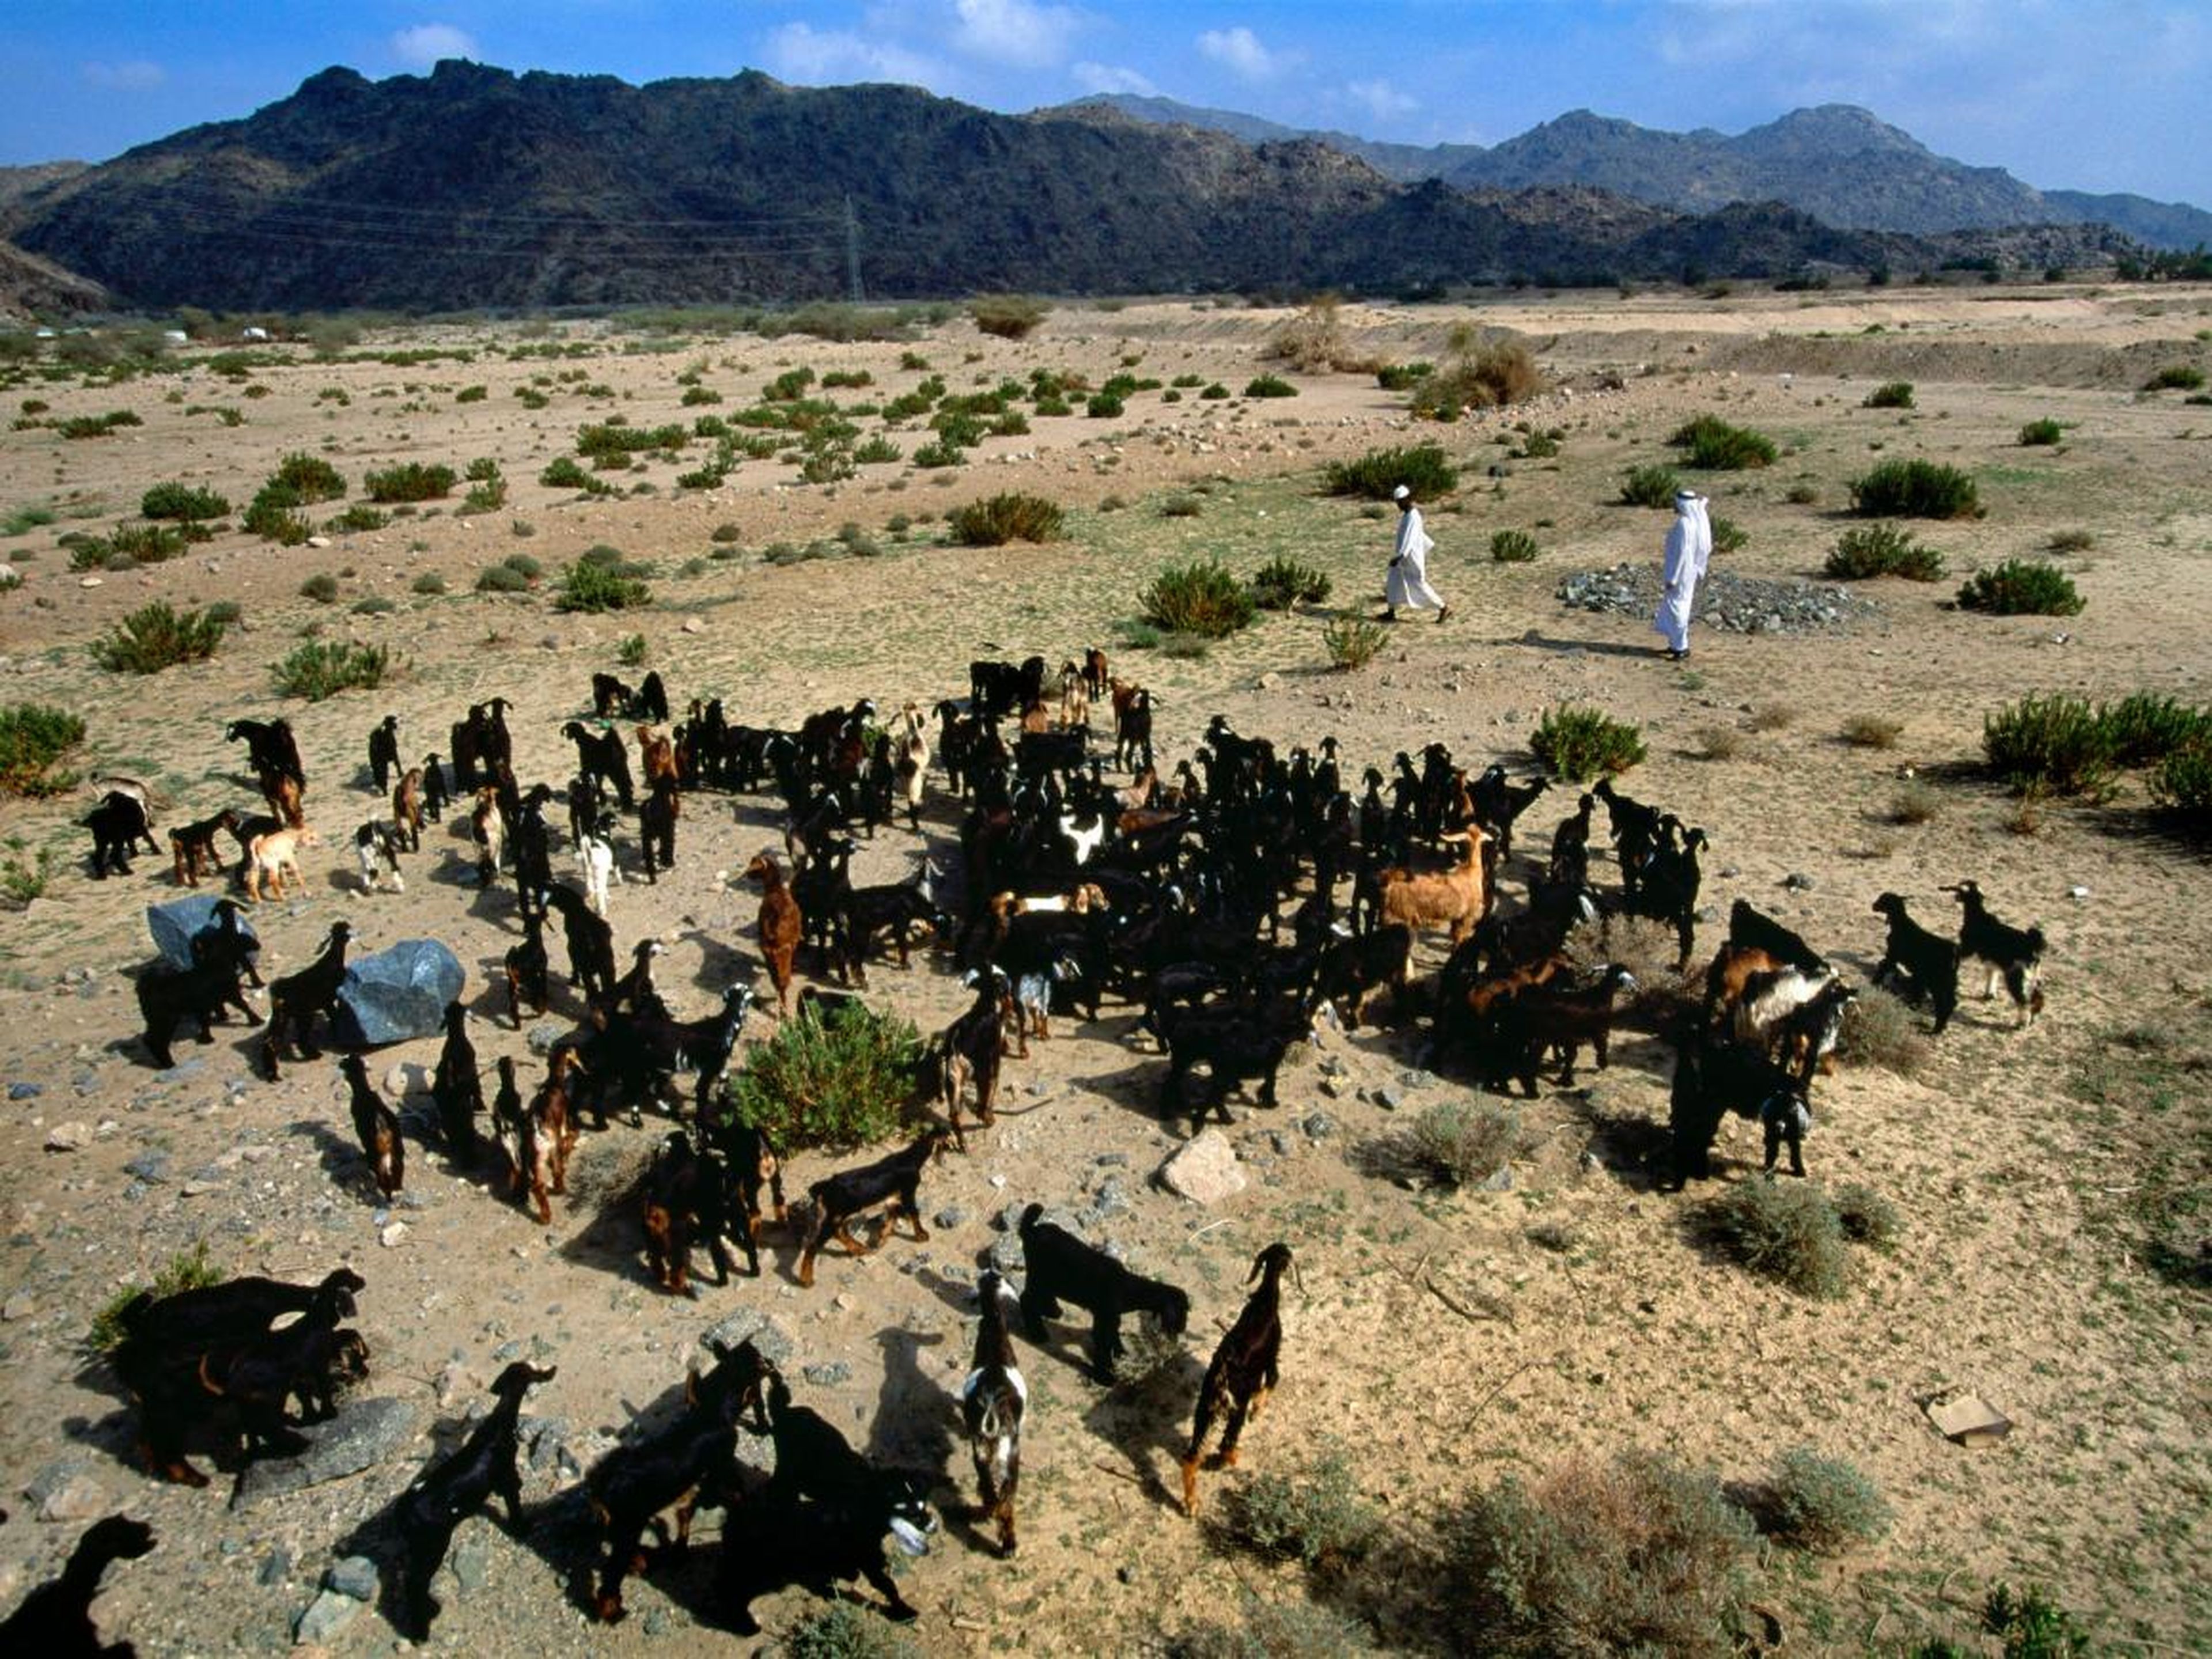 Pastores reuniendo cabras en el desierto a las afueras de La Meca.